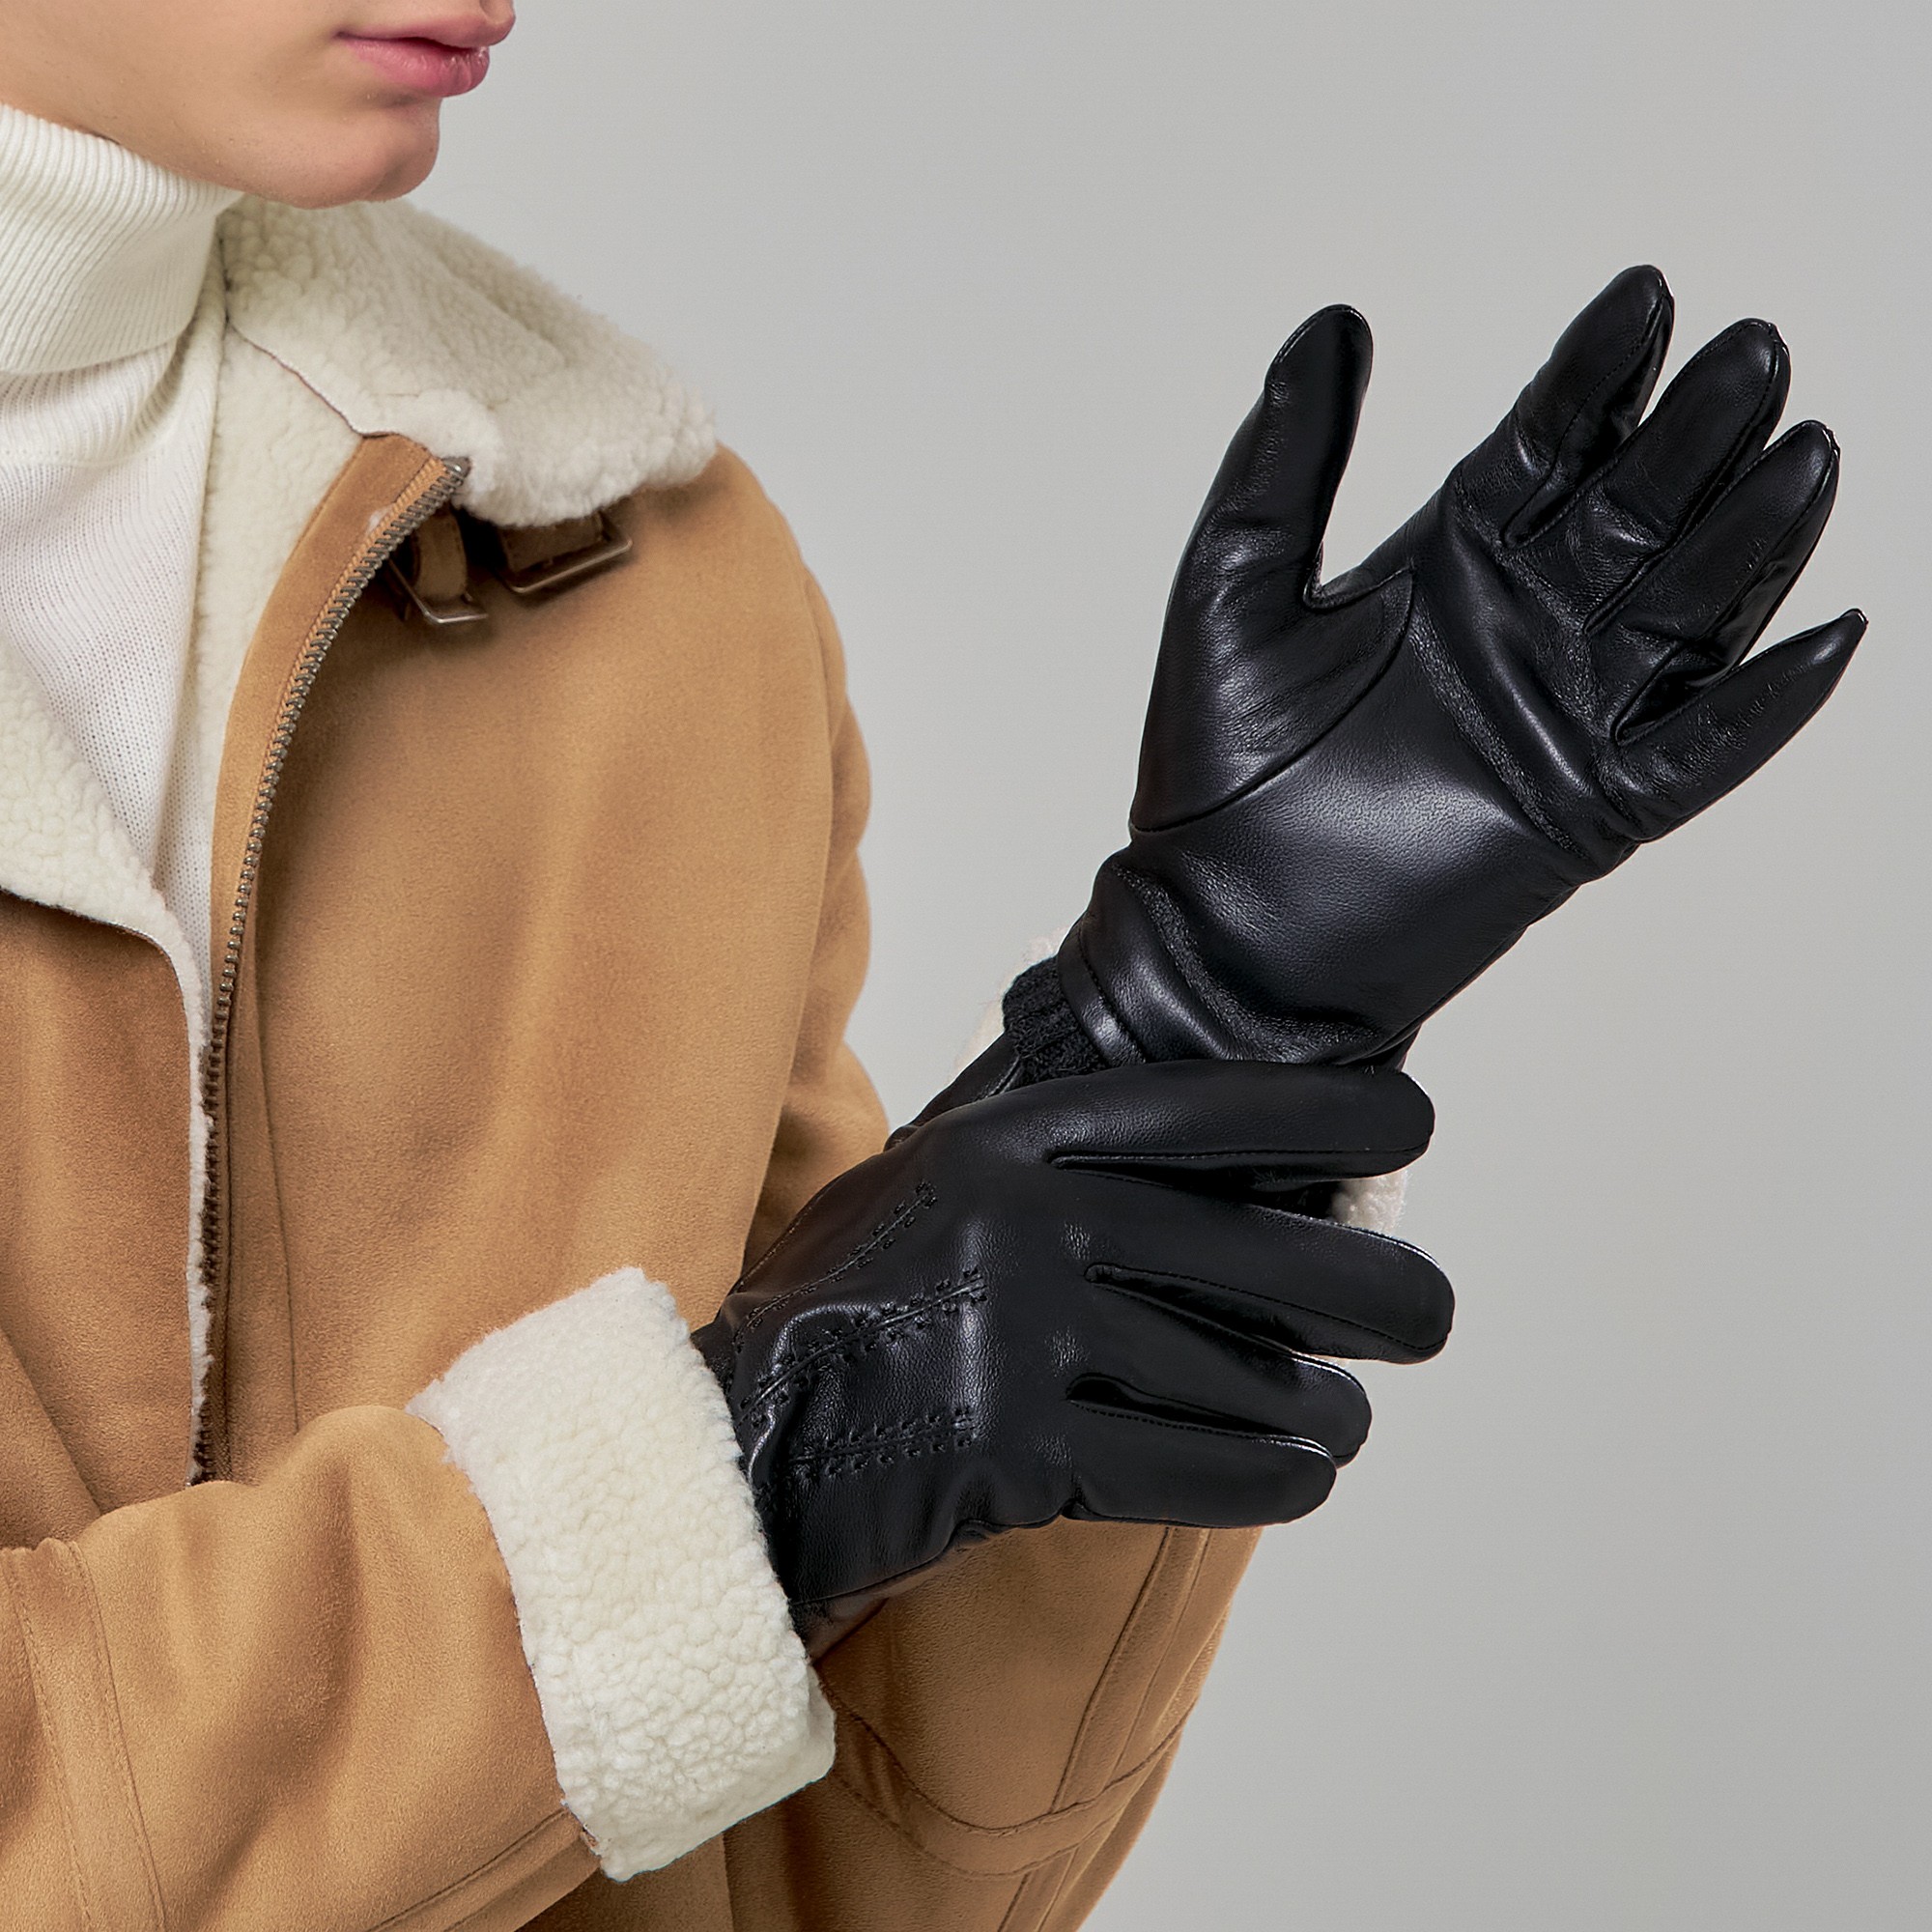 Др.Коффер H760129-236-04 перчатки (9,5), размер 9, цвет черный - фото 2